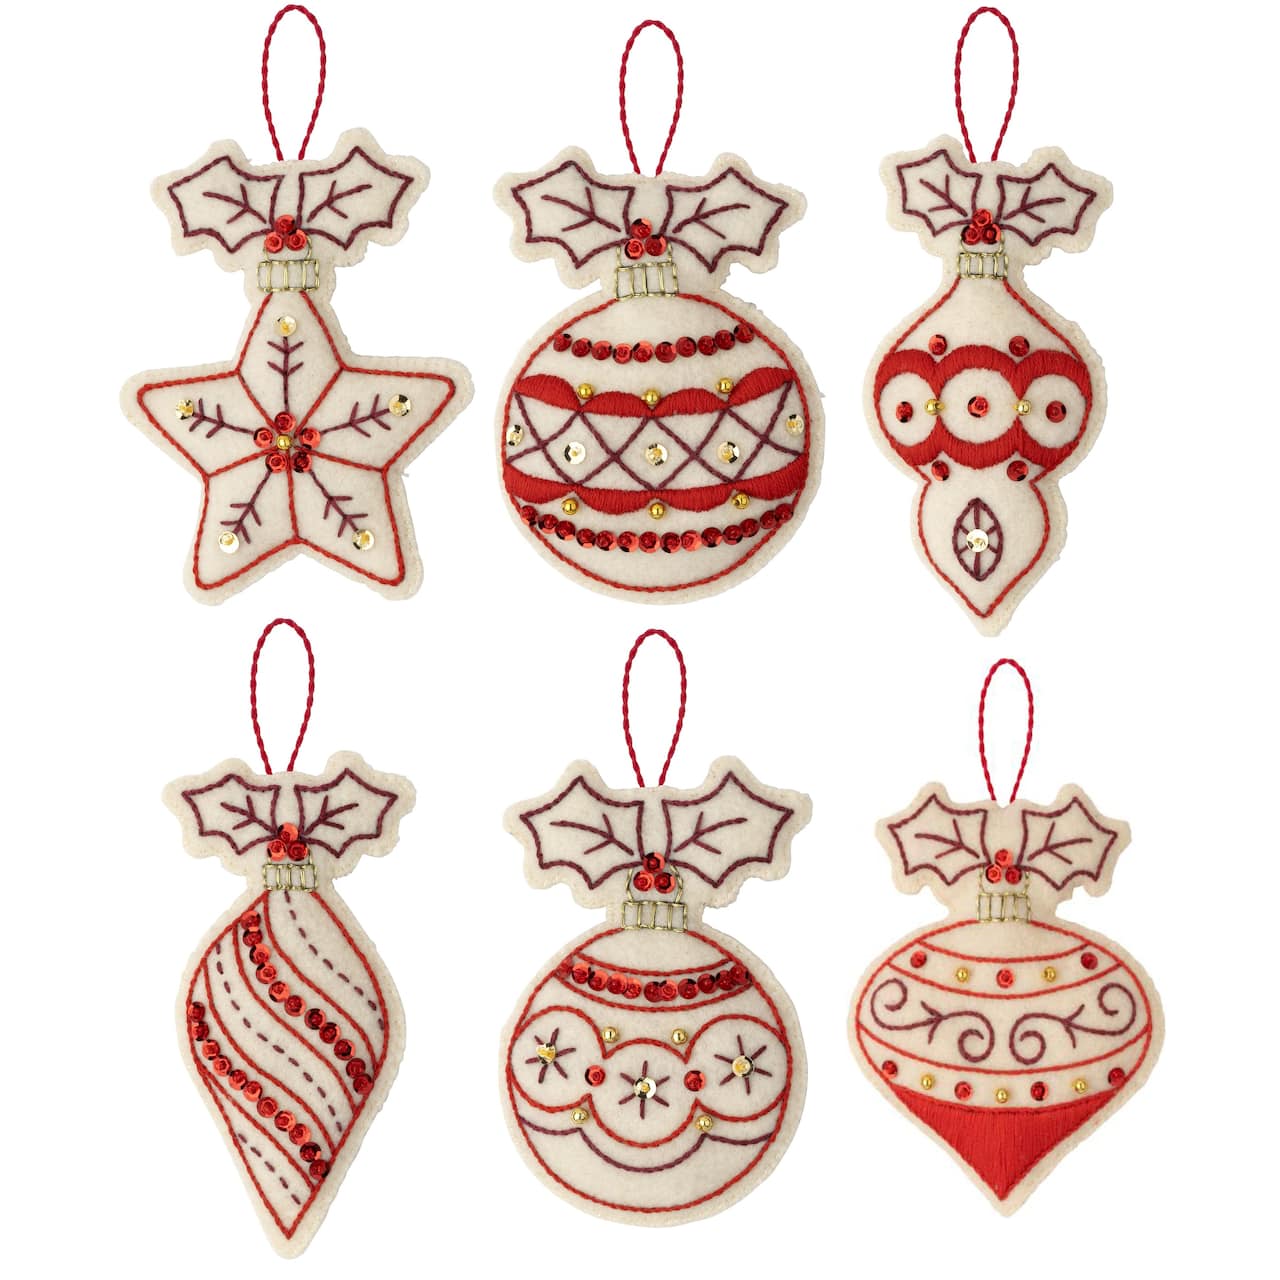 Bucilla® Classic Christmas Felt Ornaments Applique Kit